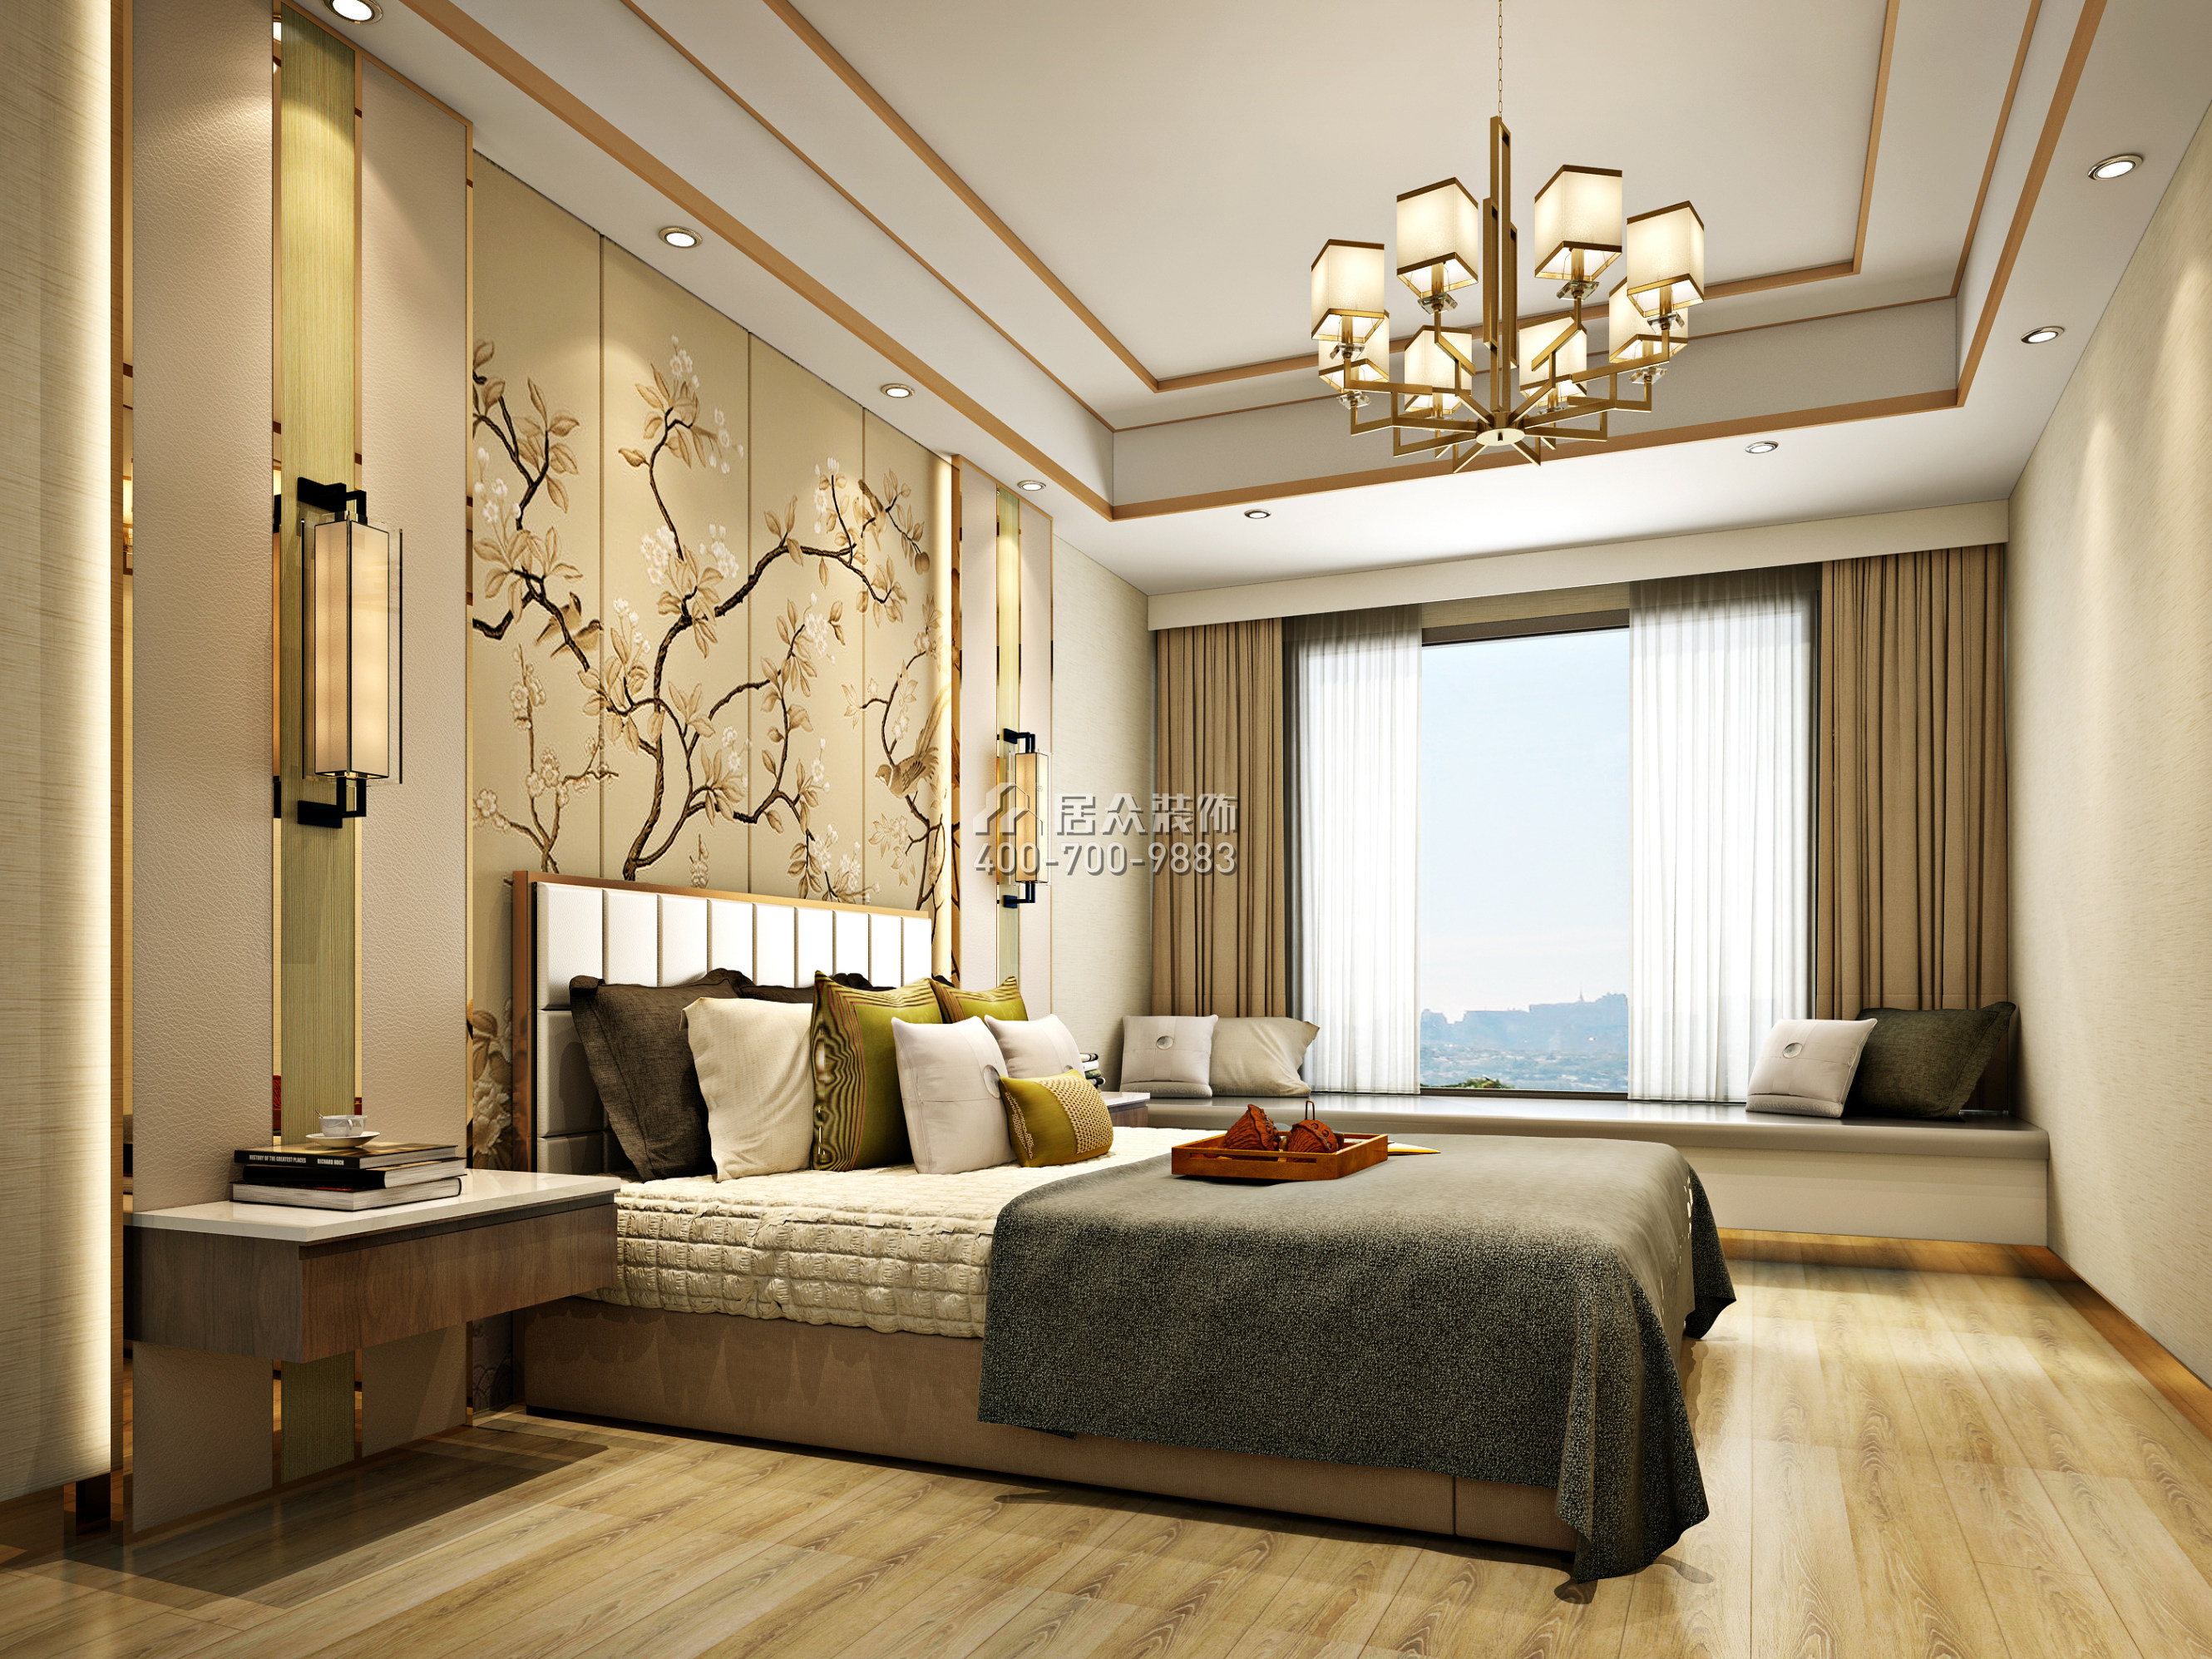 华润城润府160平方米中式风格平层户型卧室装修效果图